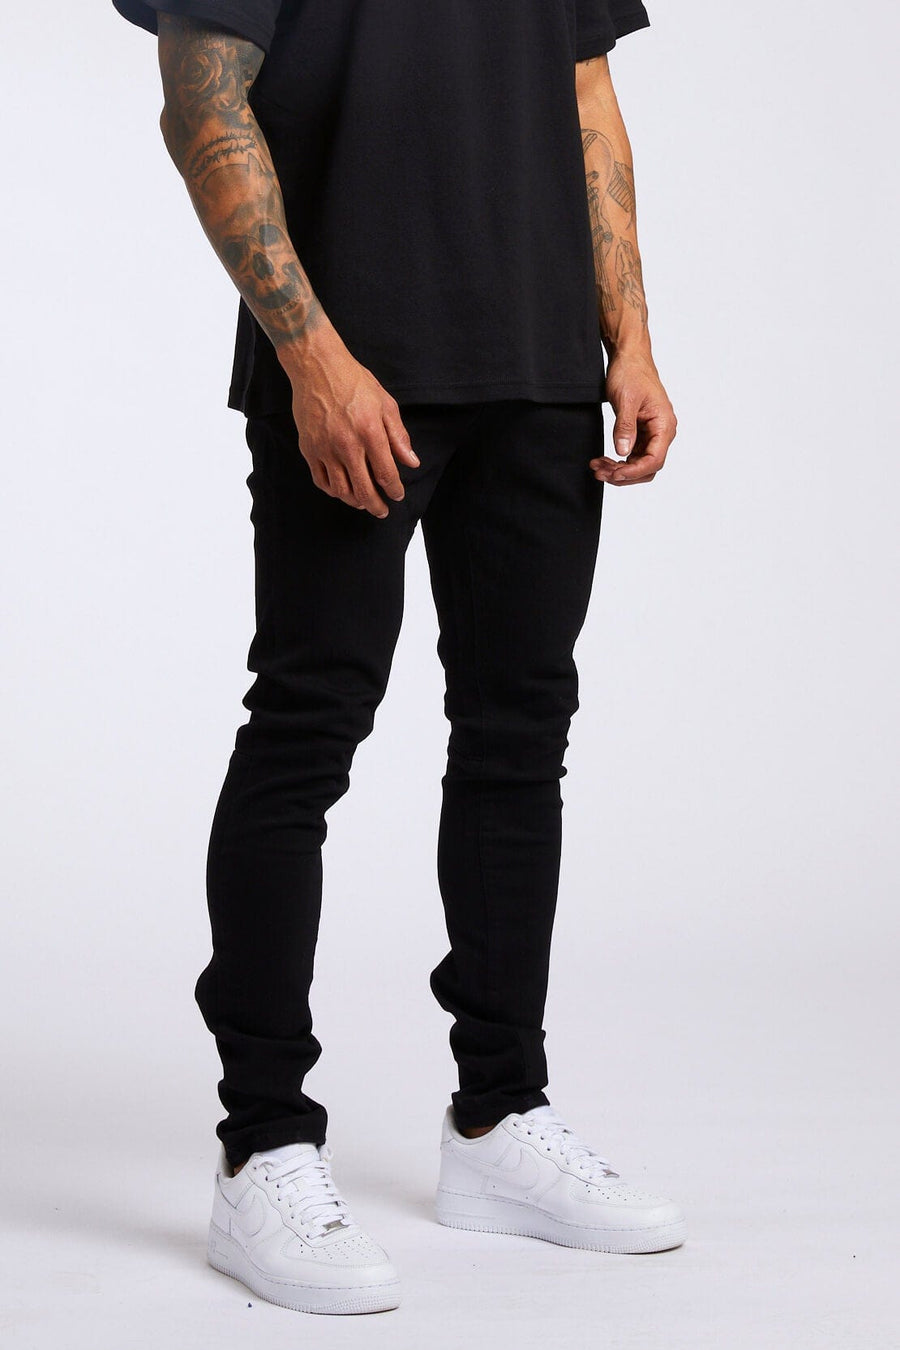 Legend London Jeans SLIM FIT JEANS - BLACK